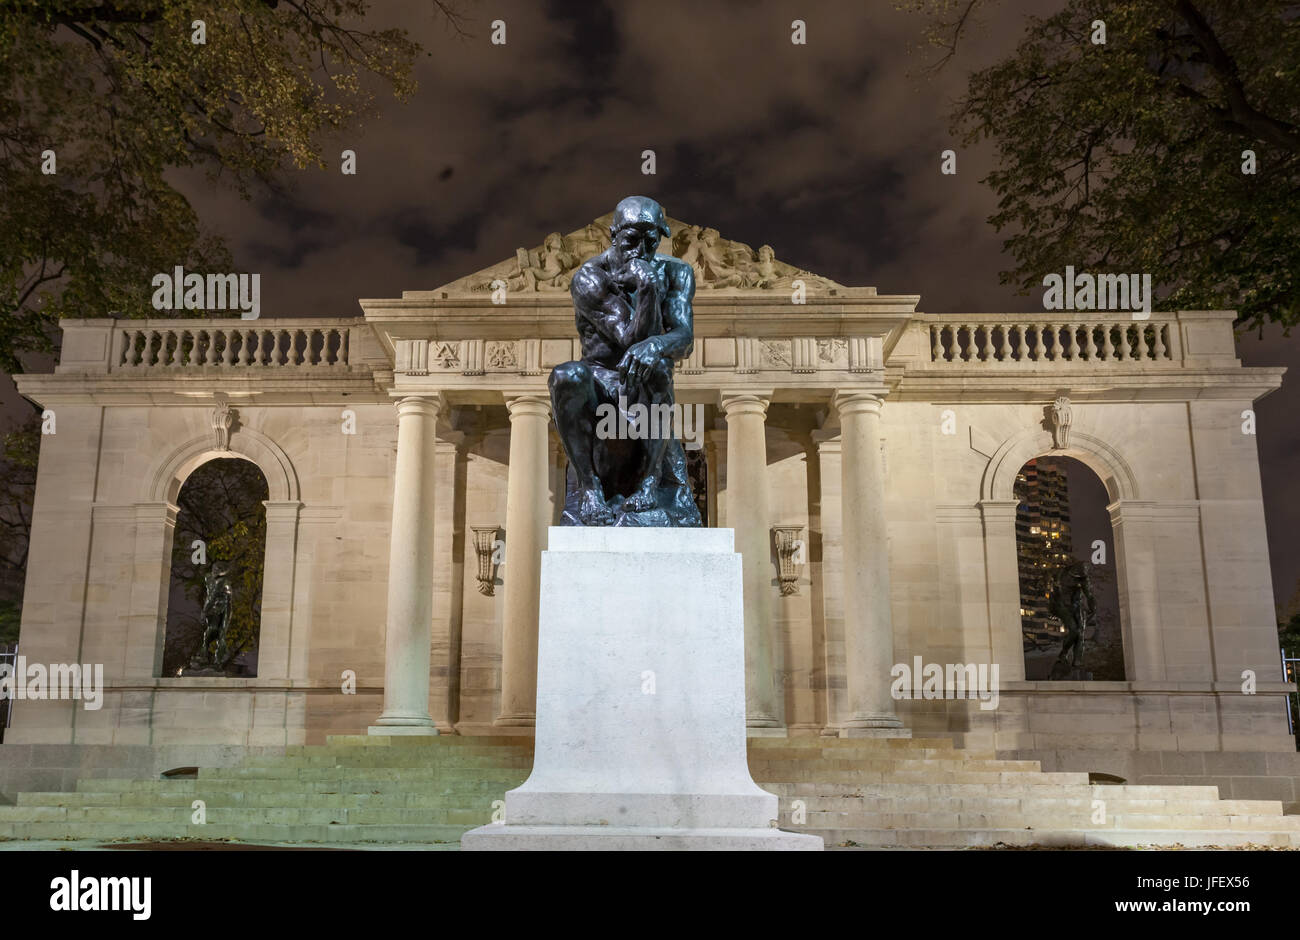 PHILADELPHIA, PA - NOVEMBRE 2012 : Statue Du penseur au musée Rodin de Philadelphie, PA. Le Musée Rodin est situé sur la Benjamin Franklin Banque D'Images